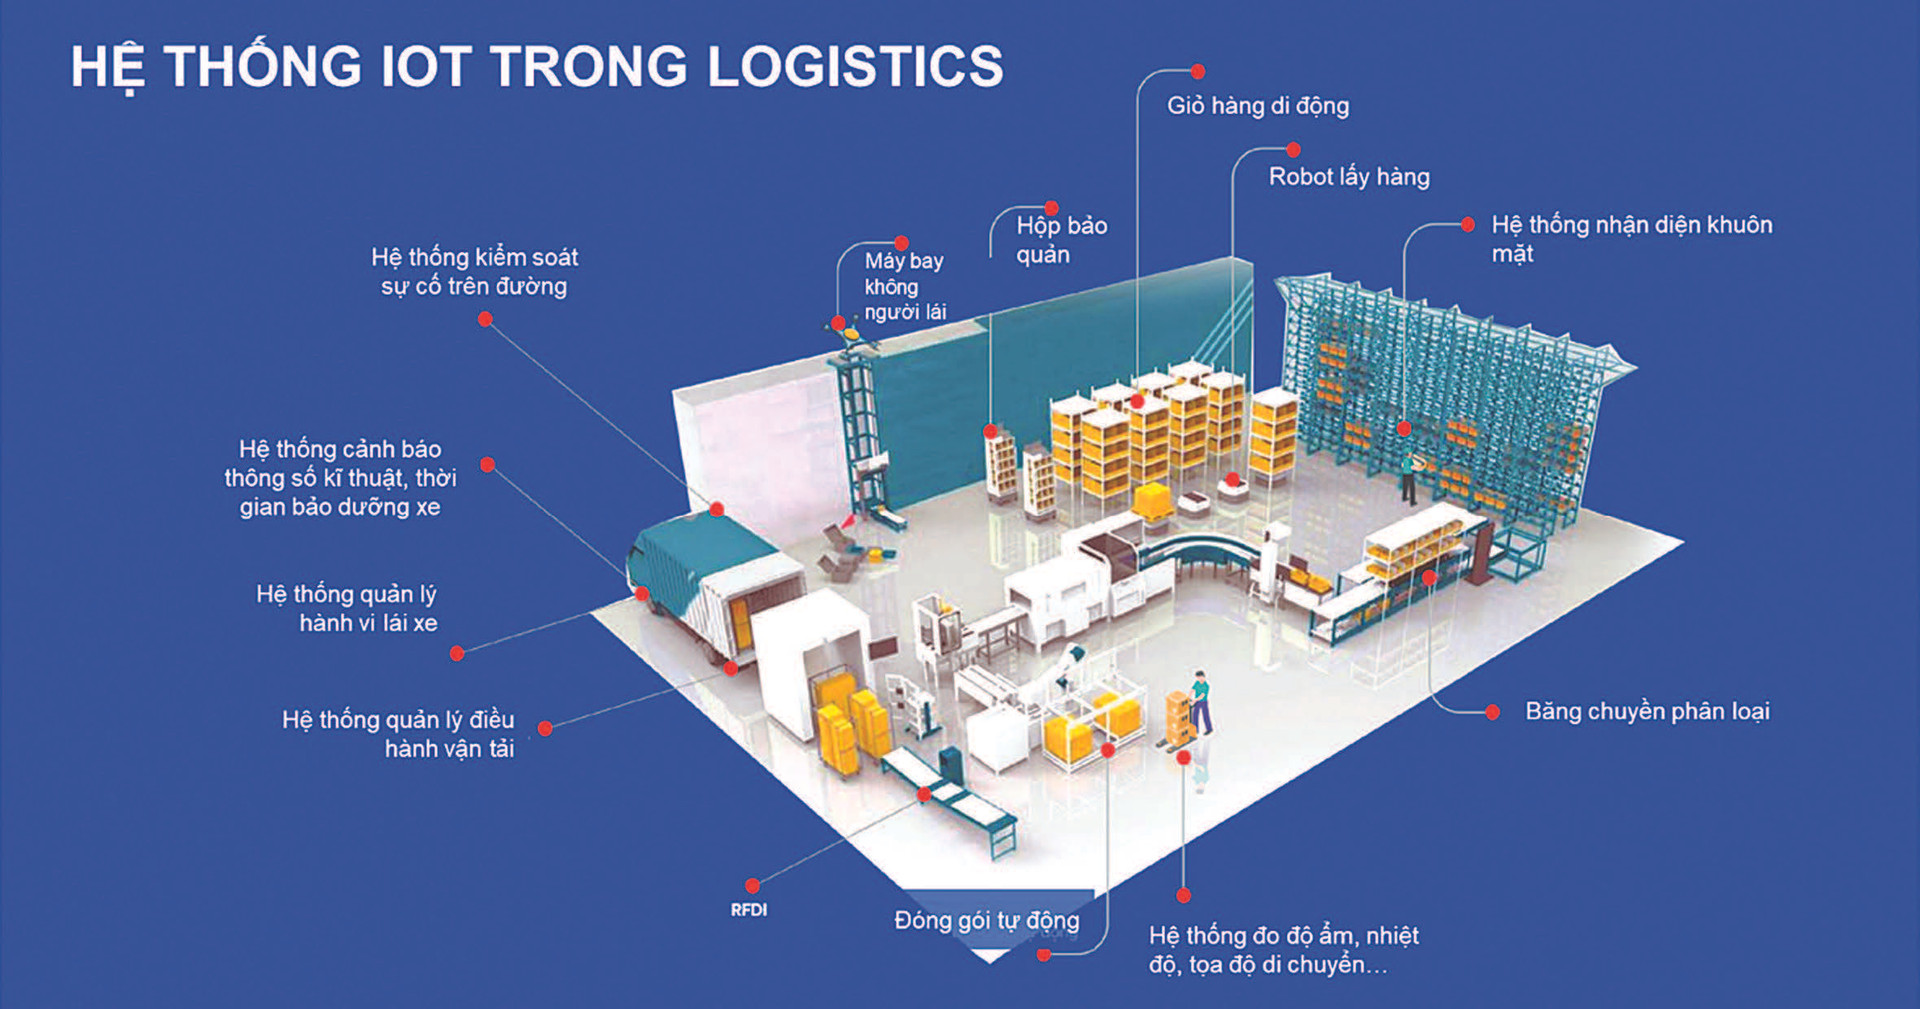 Chuyển đổi số trong ngành dịch vụ logistics Việt Nam: Cơ hội tạo đột phá, hiện trạng và thách thức - Ảnh 3.